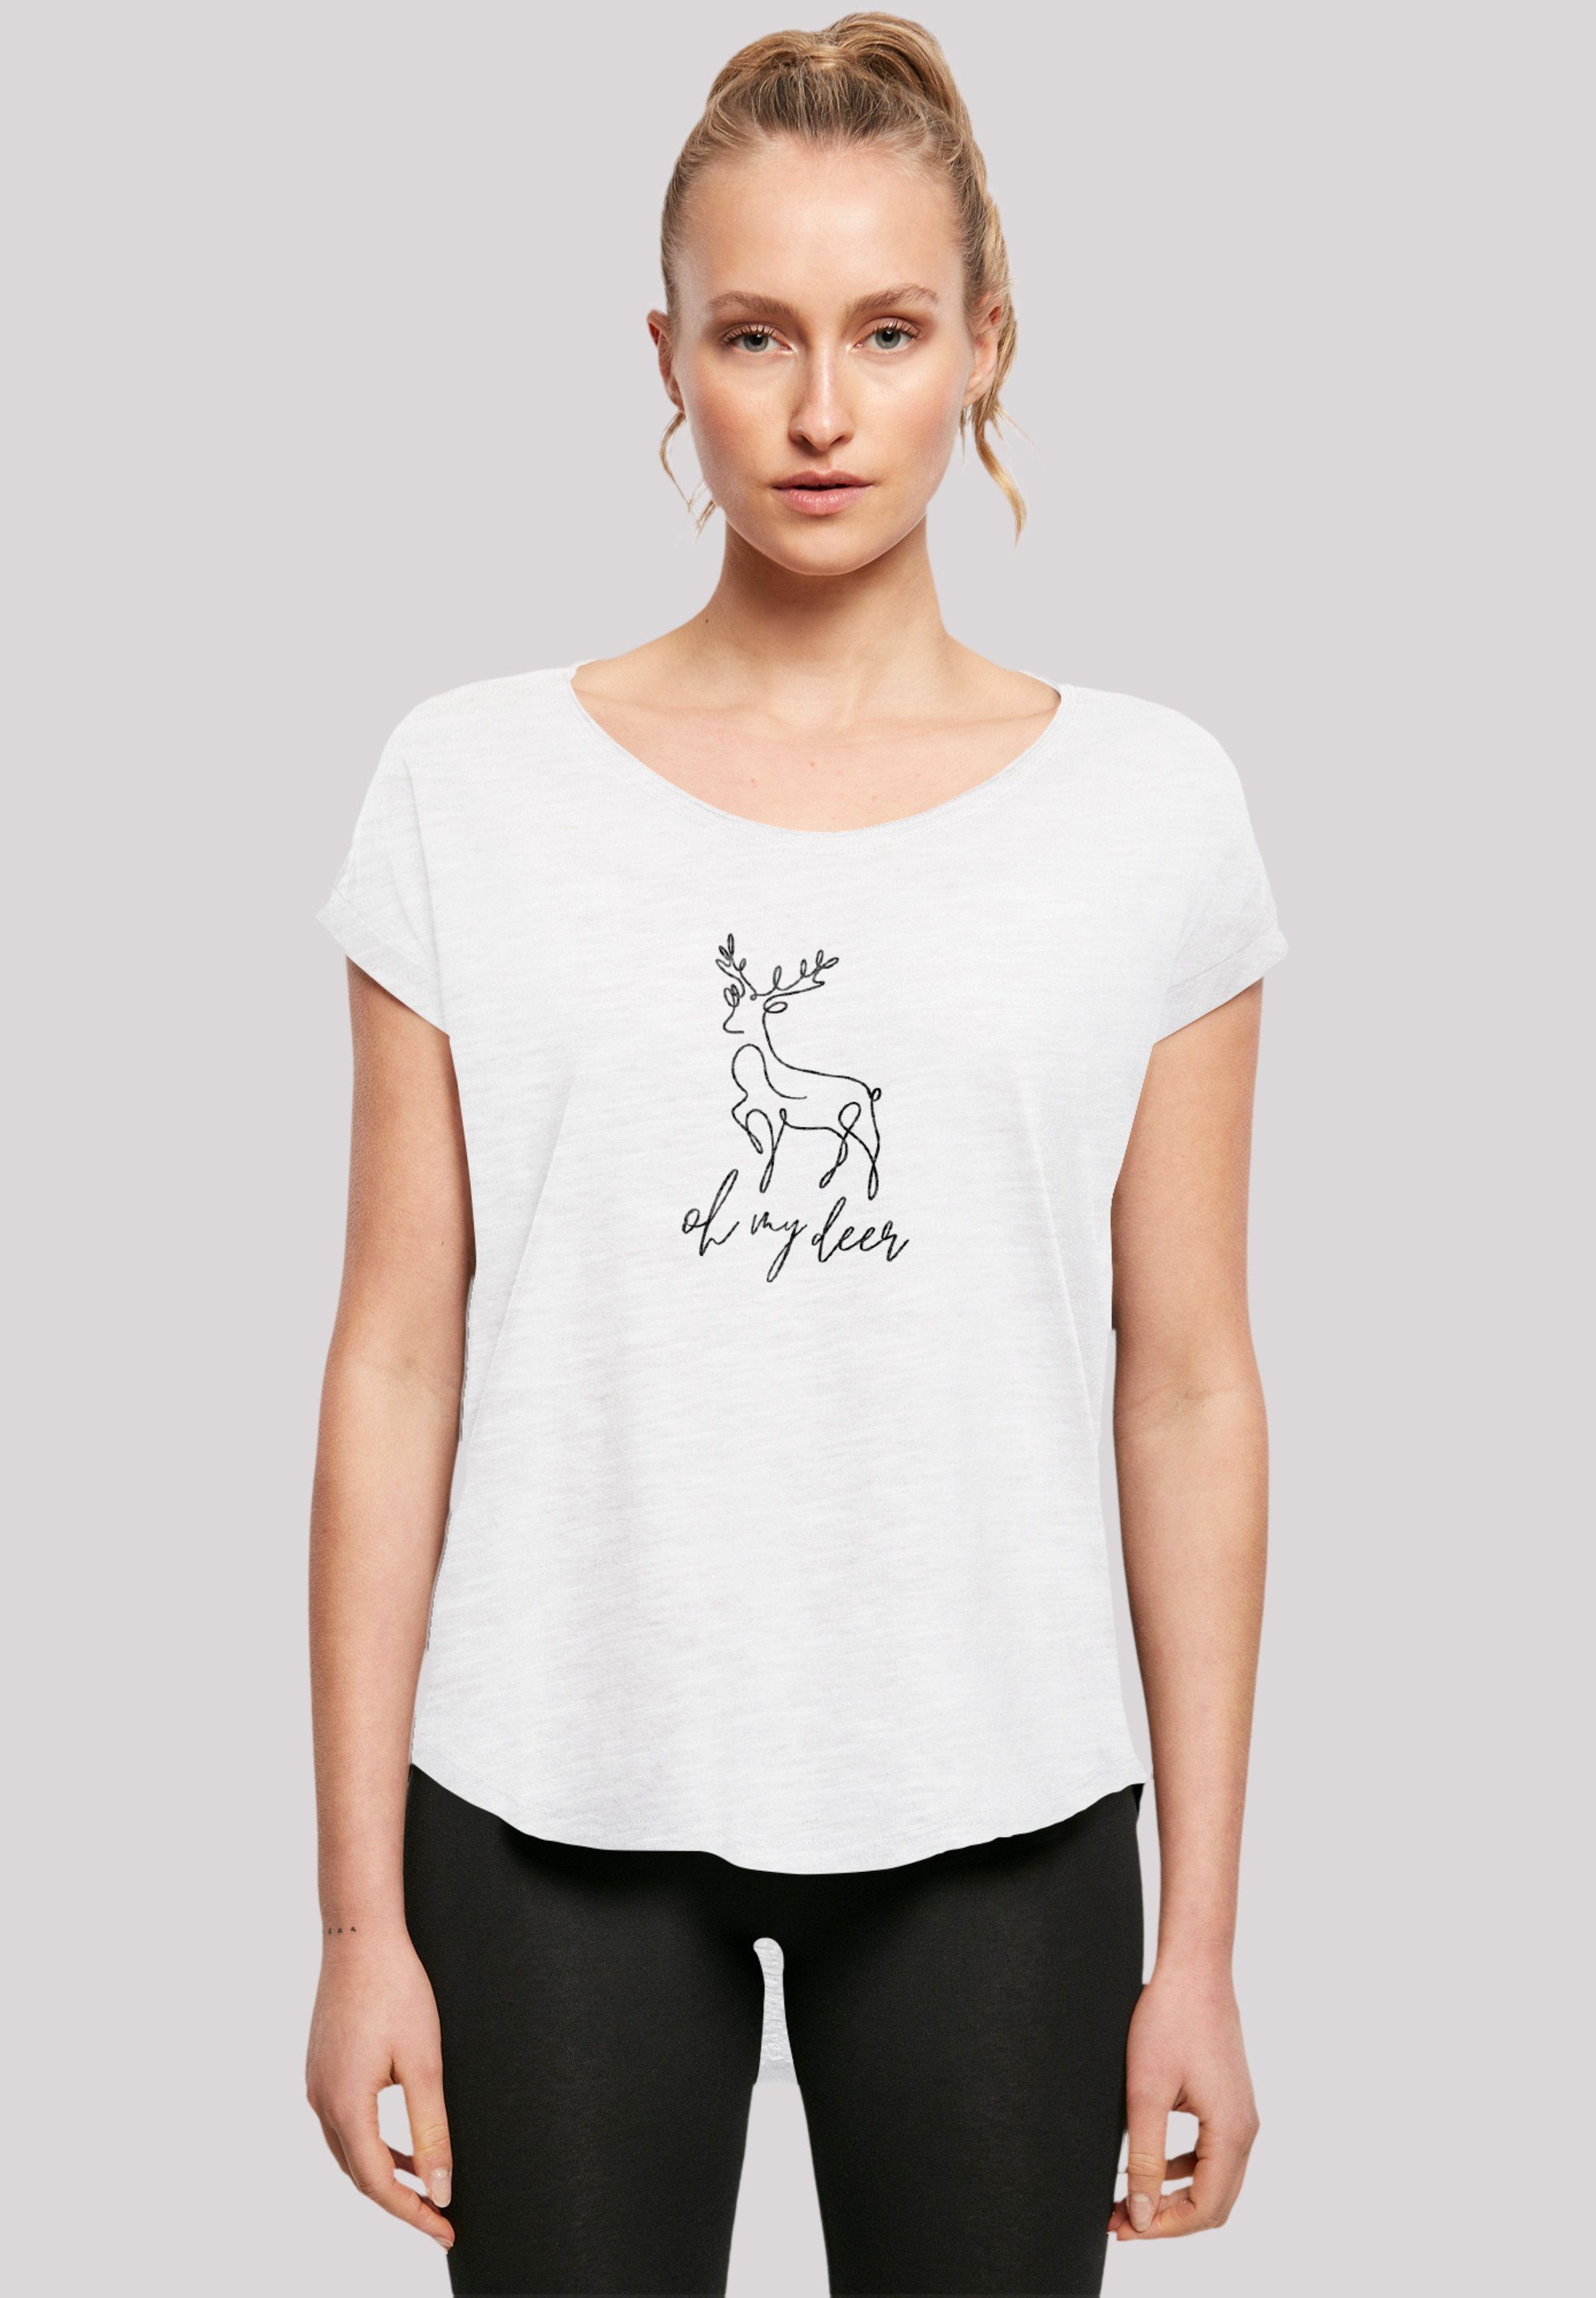 F4NT4STIC T-Shirt Winter Christmas Deer Premium Qualität, Rock-Musik, Band weiß